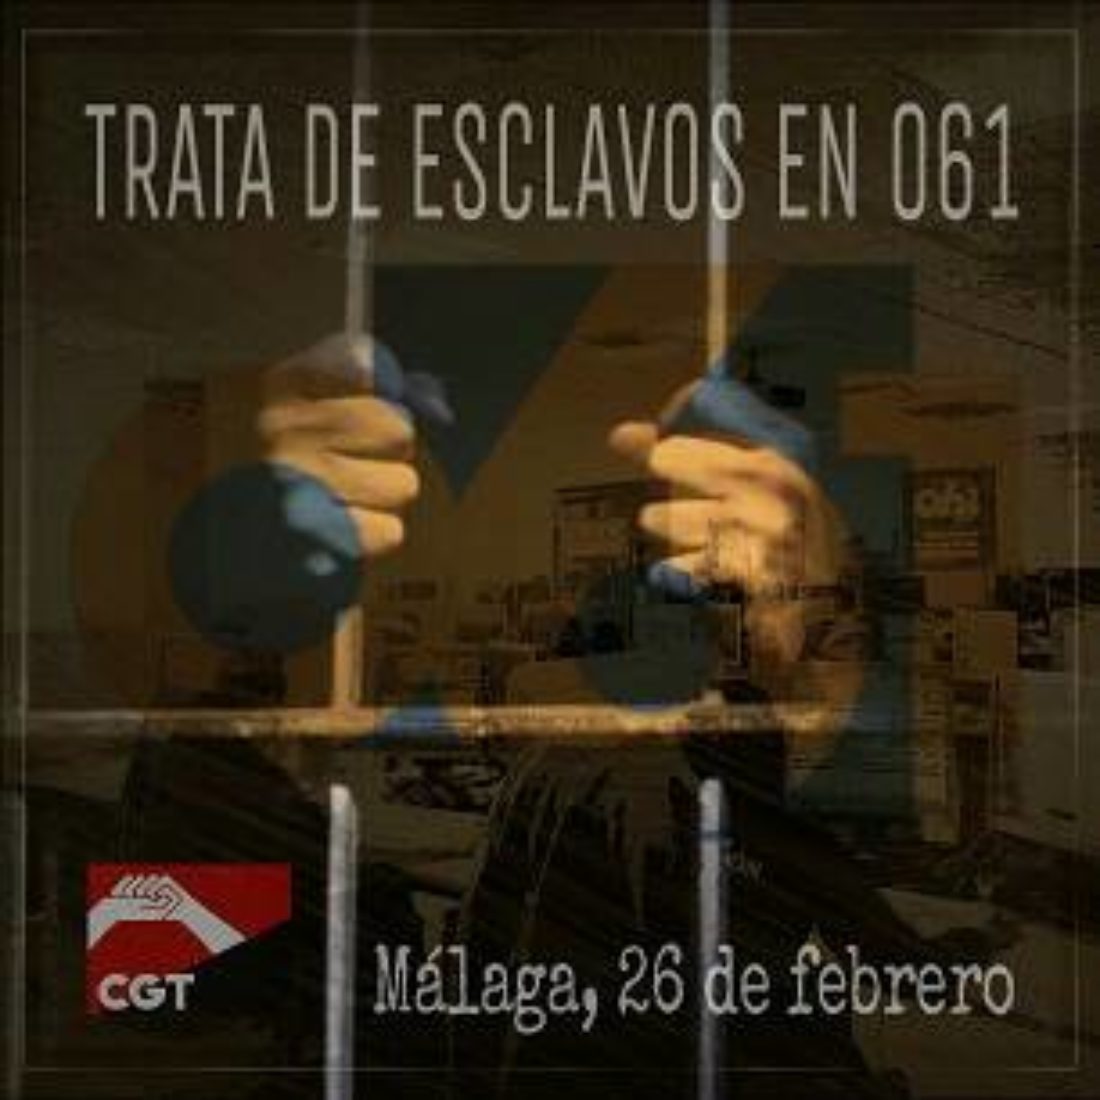 Las trabajadoras y trabajadores de Emergencias reclaman su cualificación y reconocimiento profesional a la Junta de Andalucía